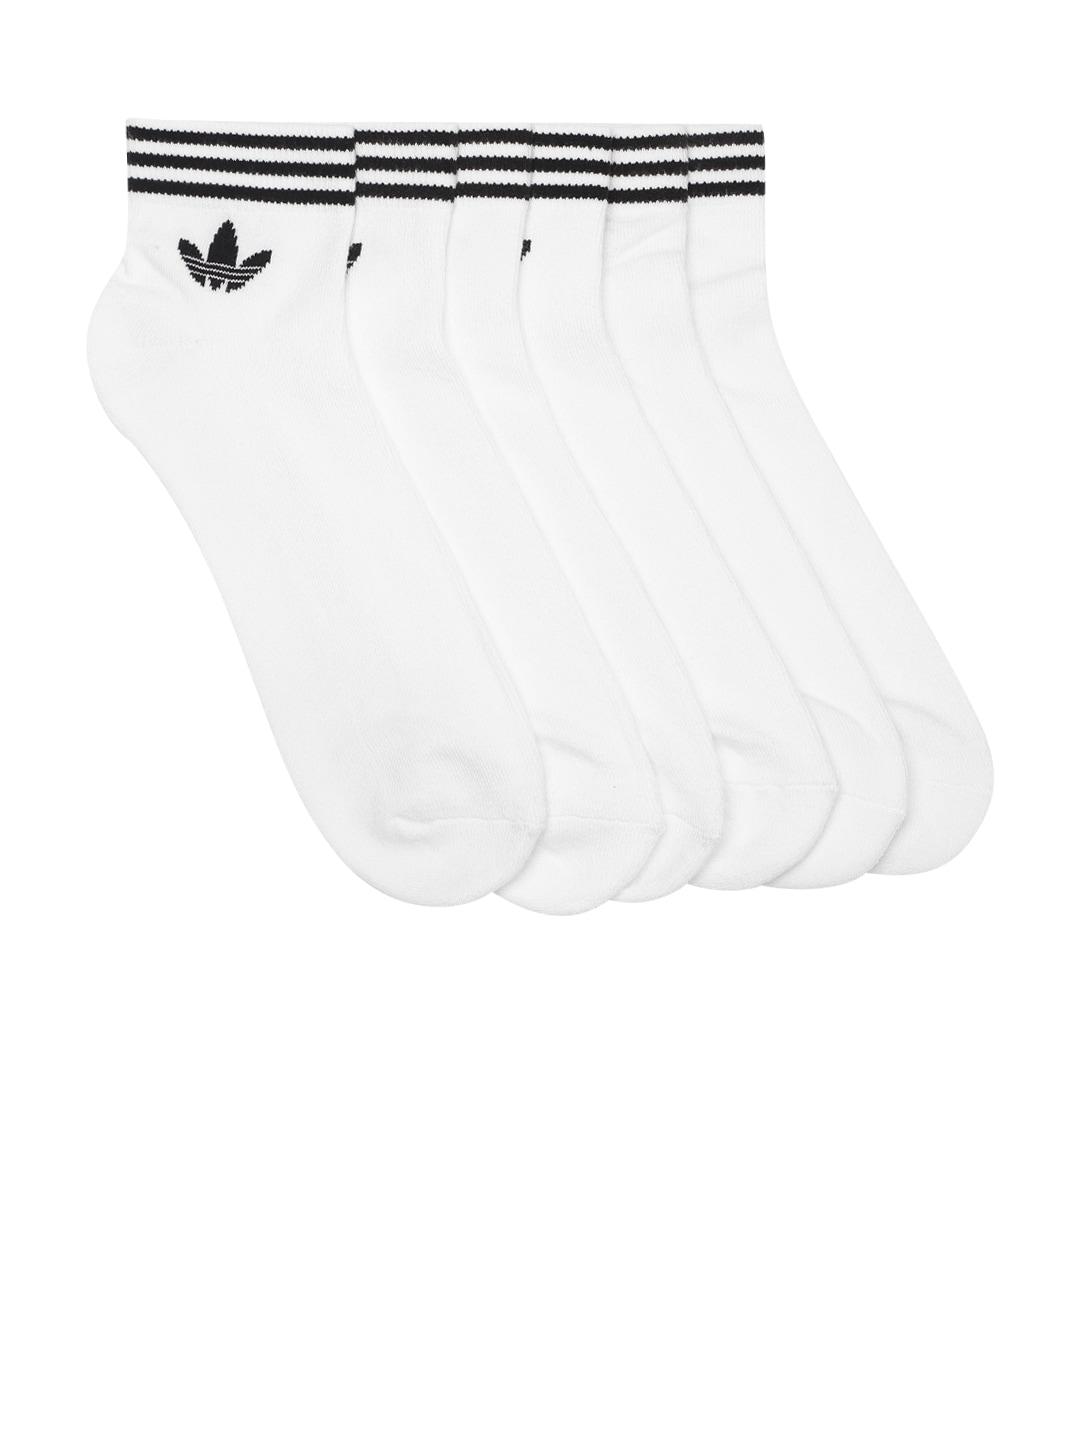 adidas originals men pack of 3 white brand logo detail above ankle-length socks